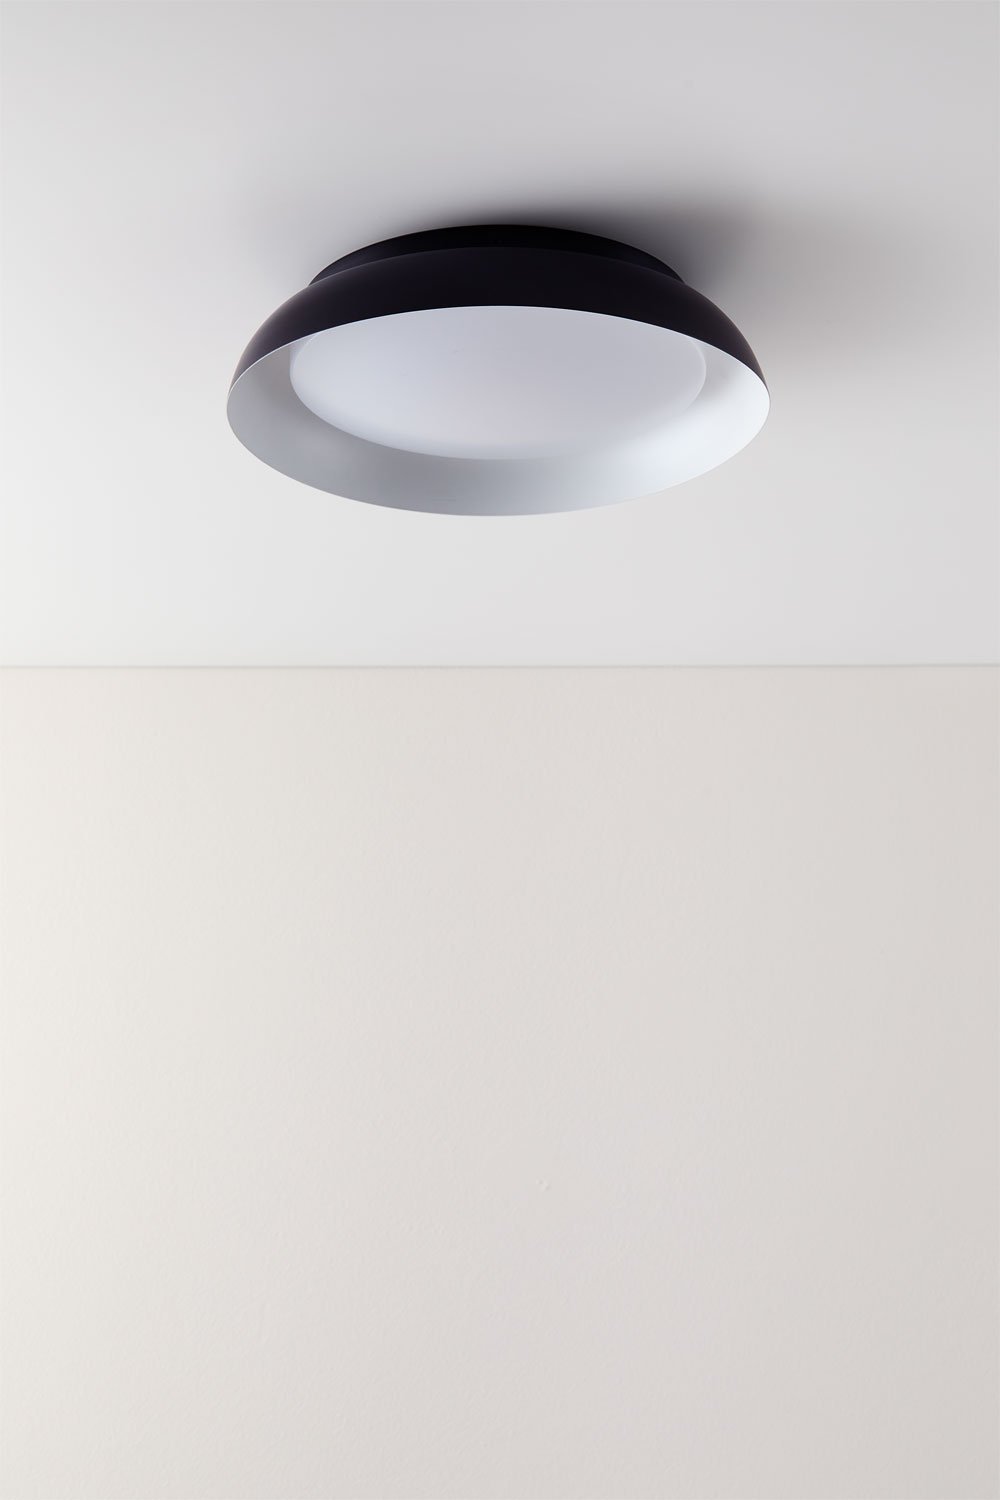 LED-buitenplafondlamp van Azanuy-staal, galerij beeld 1